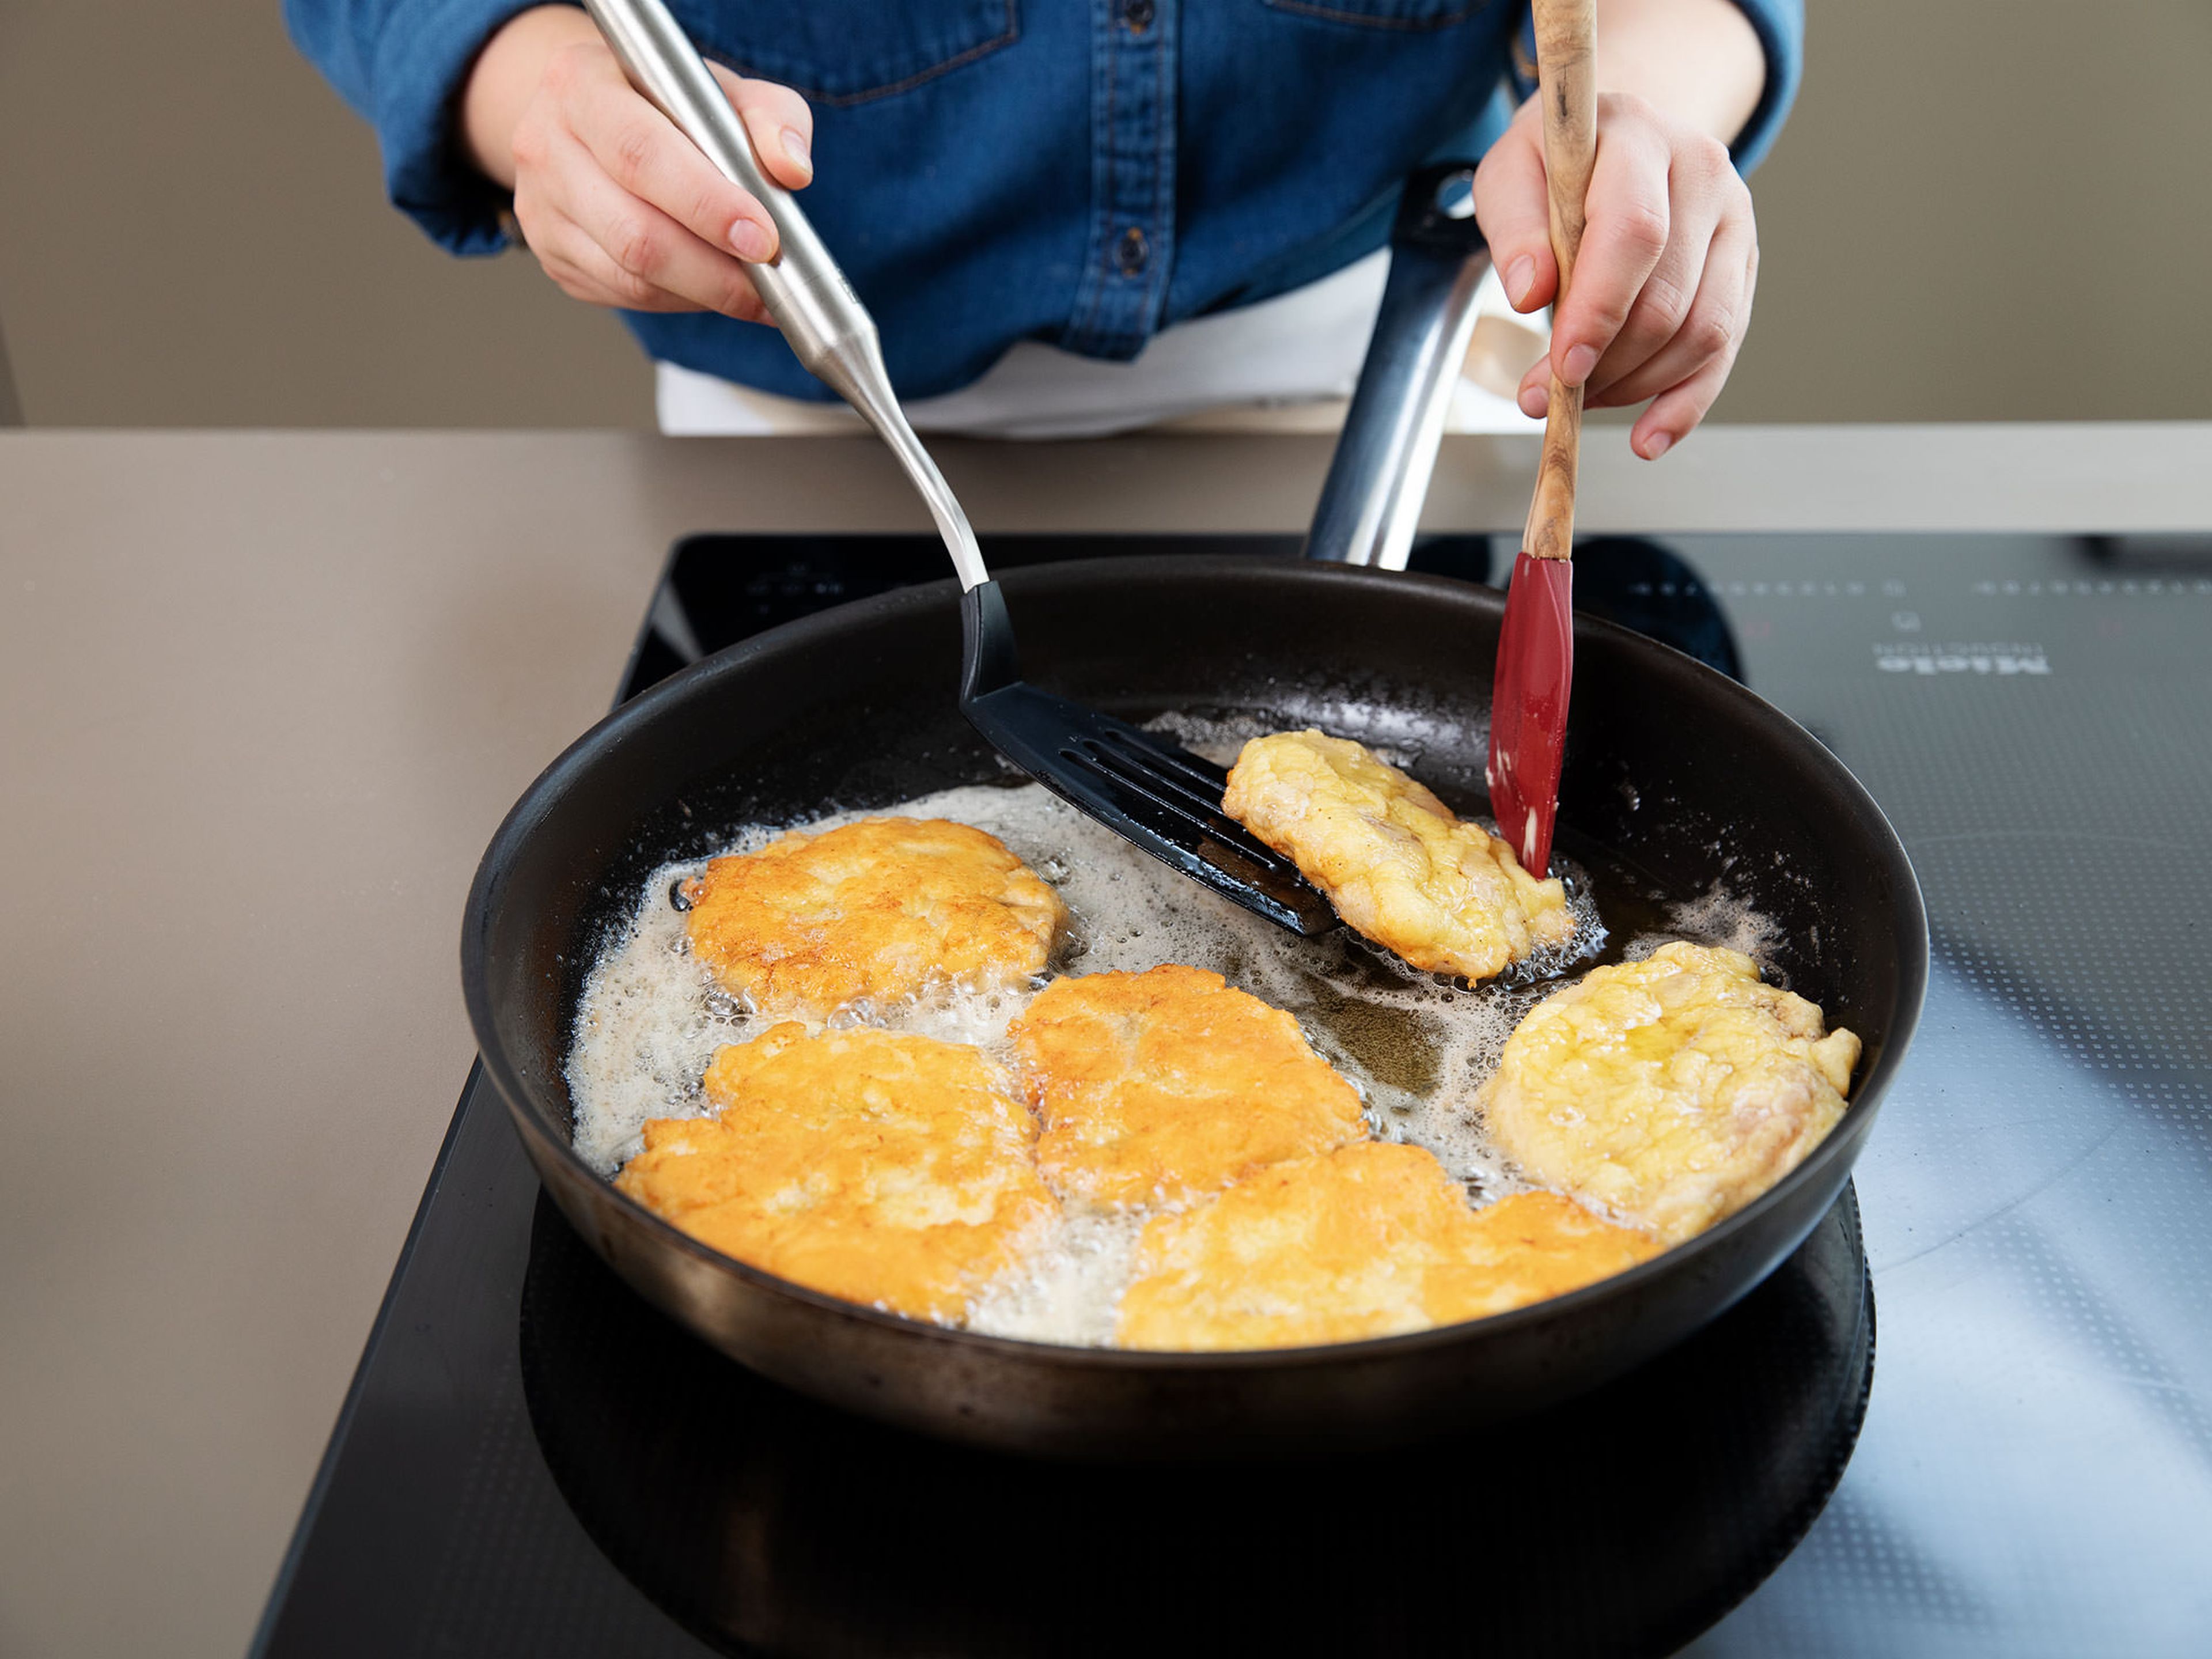 Pflanzenöl in einer Pfanne erhitzen. Butter dazugeben und Hähnchenschnitzel darin für ca. 2 - 3 Min. knusprig und goldbraun braten. Auf einem Küchenpapier abtropfen lassen.